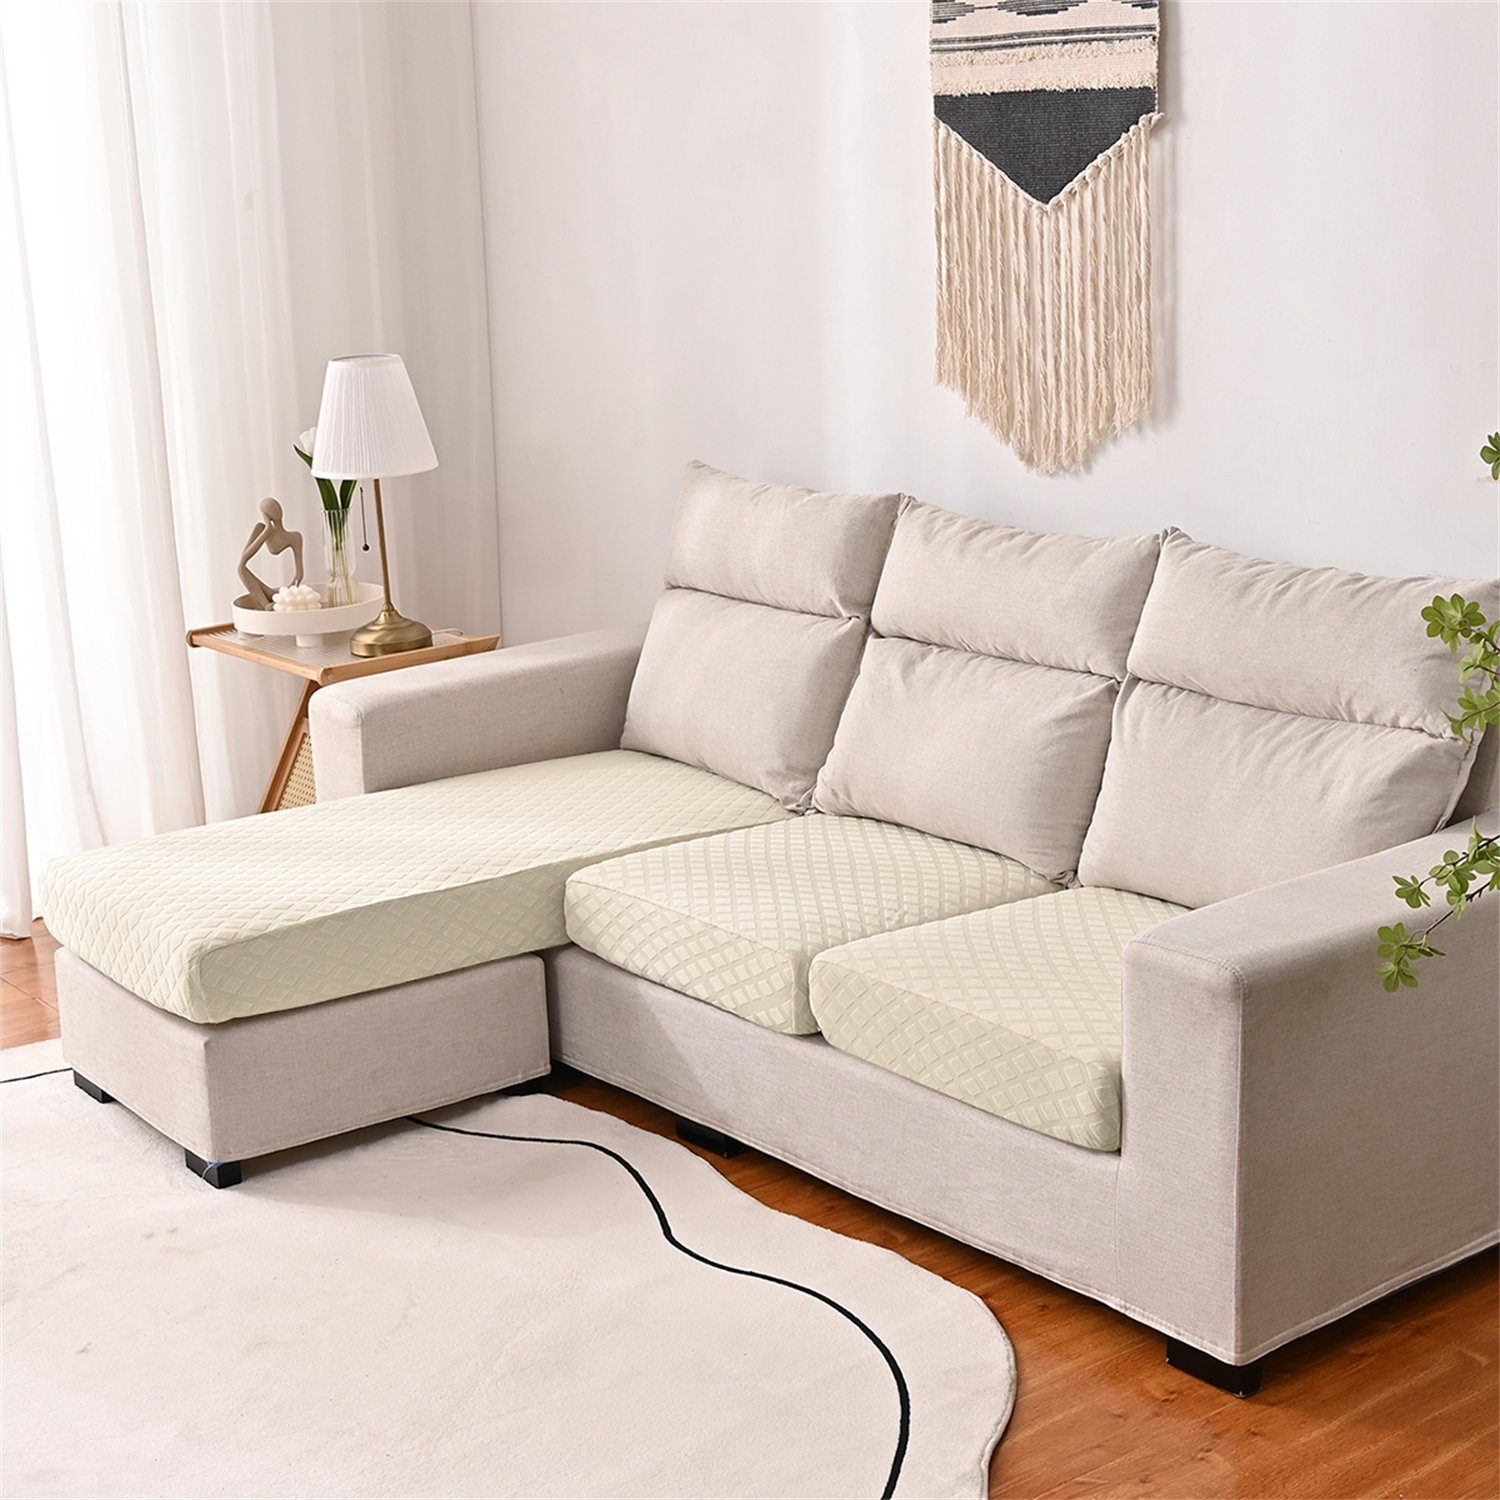 Sofa-Sitzbezug elastischer Sofahusse, Beige wasserfest HOMEIDEAS, 3DMuster mit